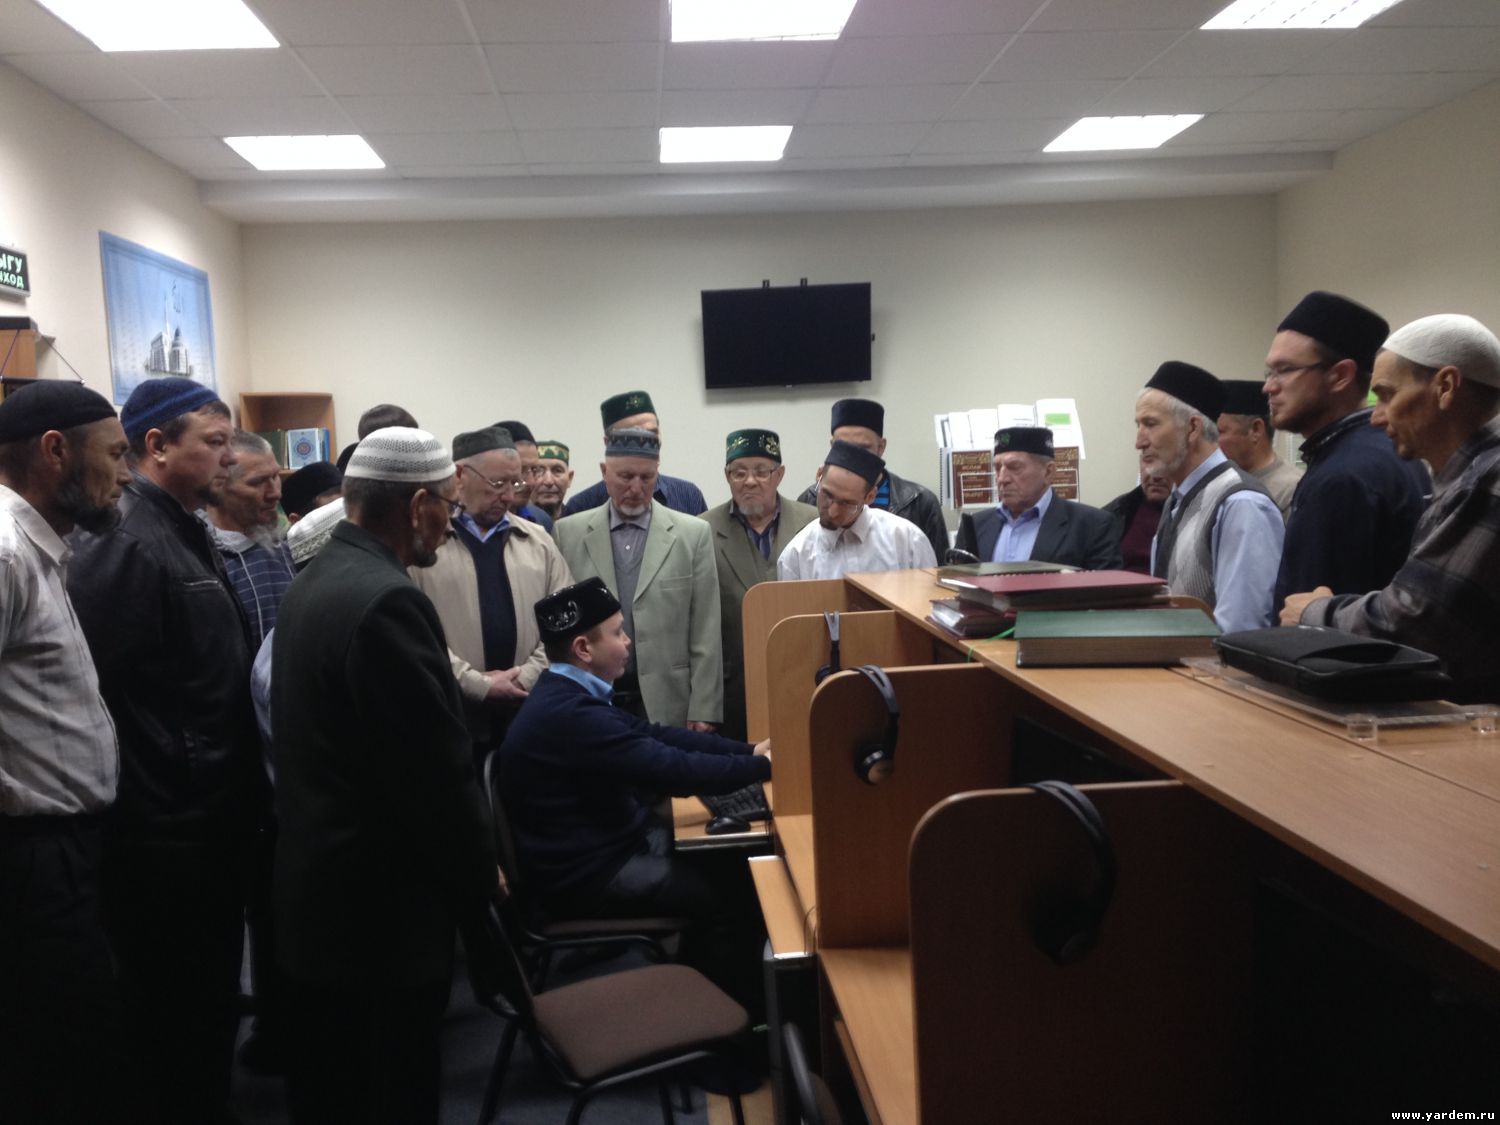 Мечеть "Ярдэм" посетили имамы Приволжского федерального округа. Общие новости